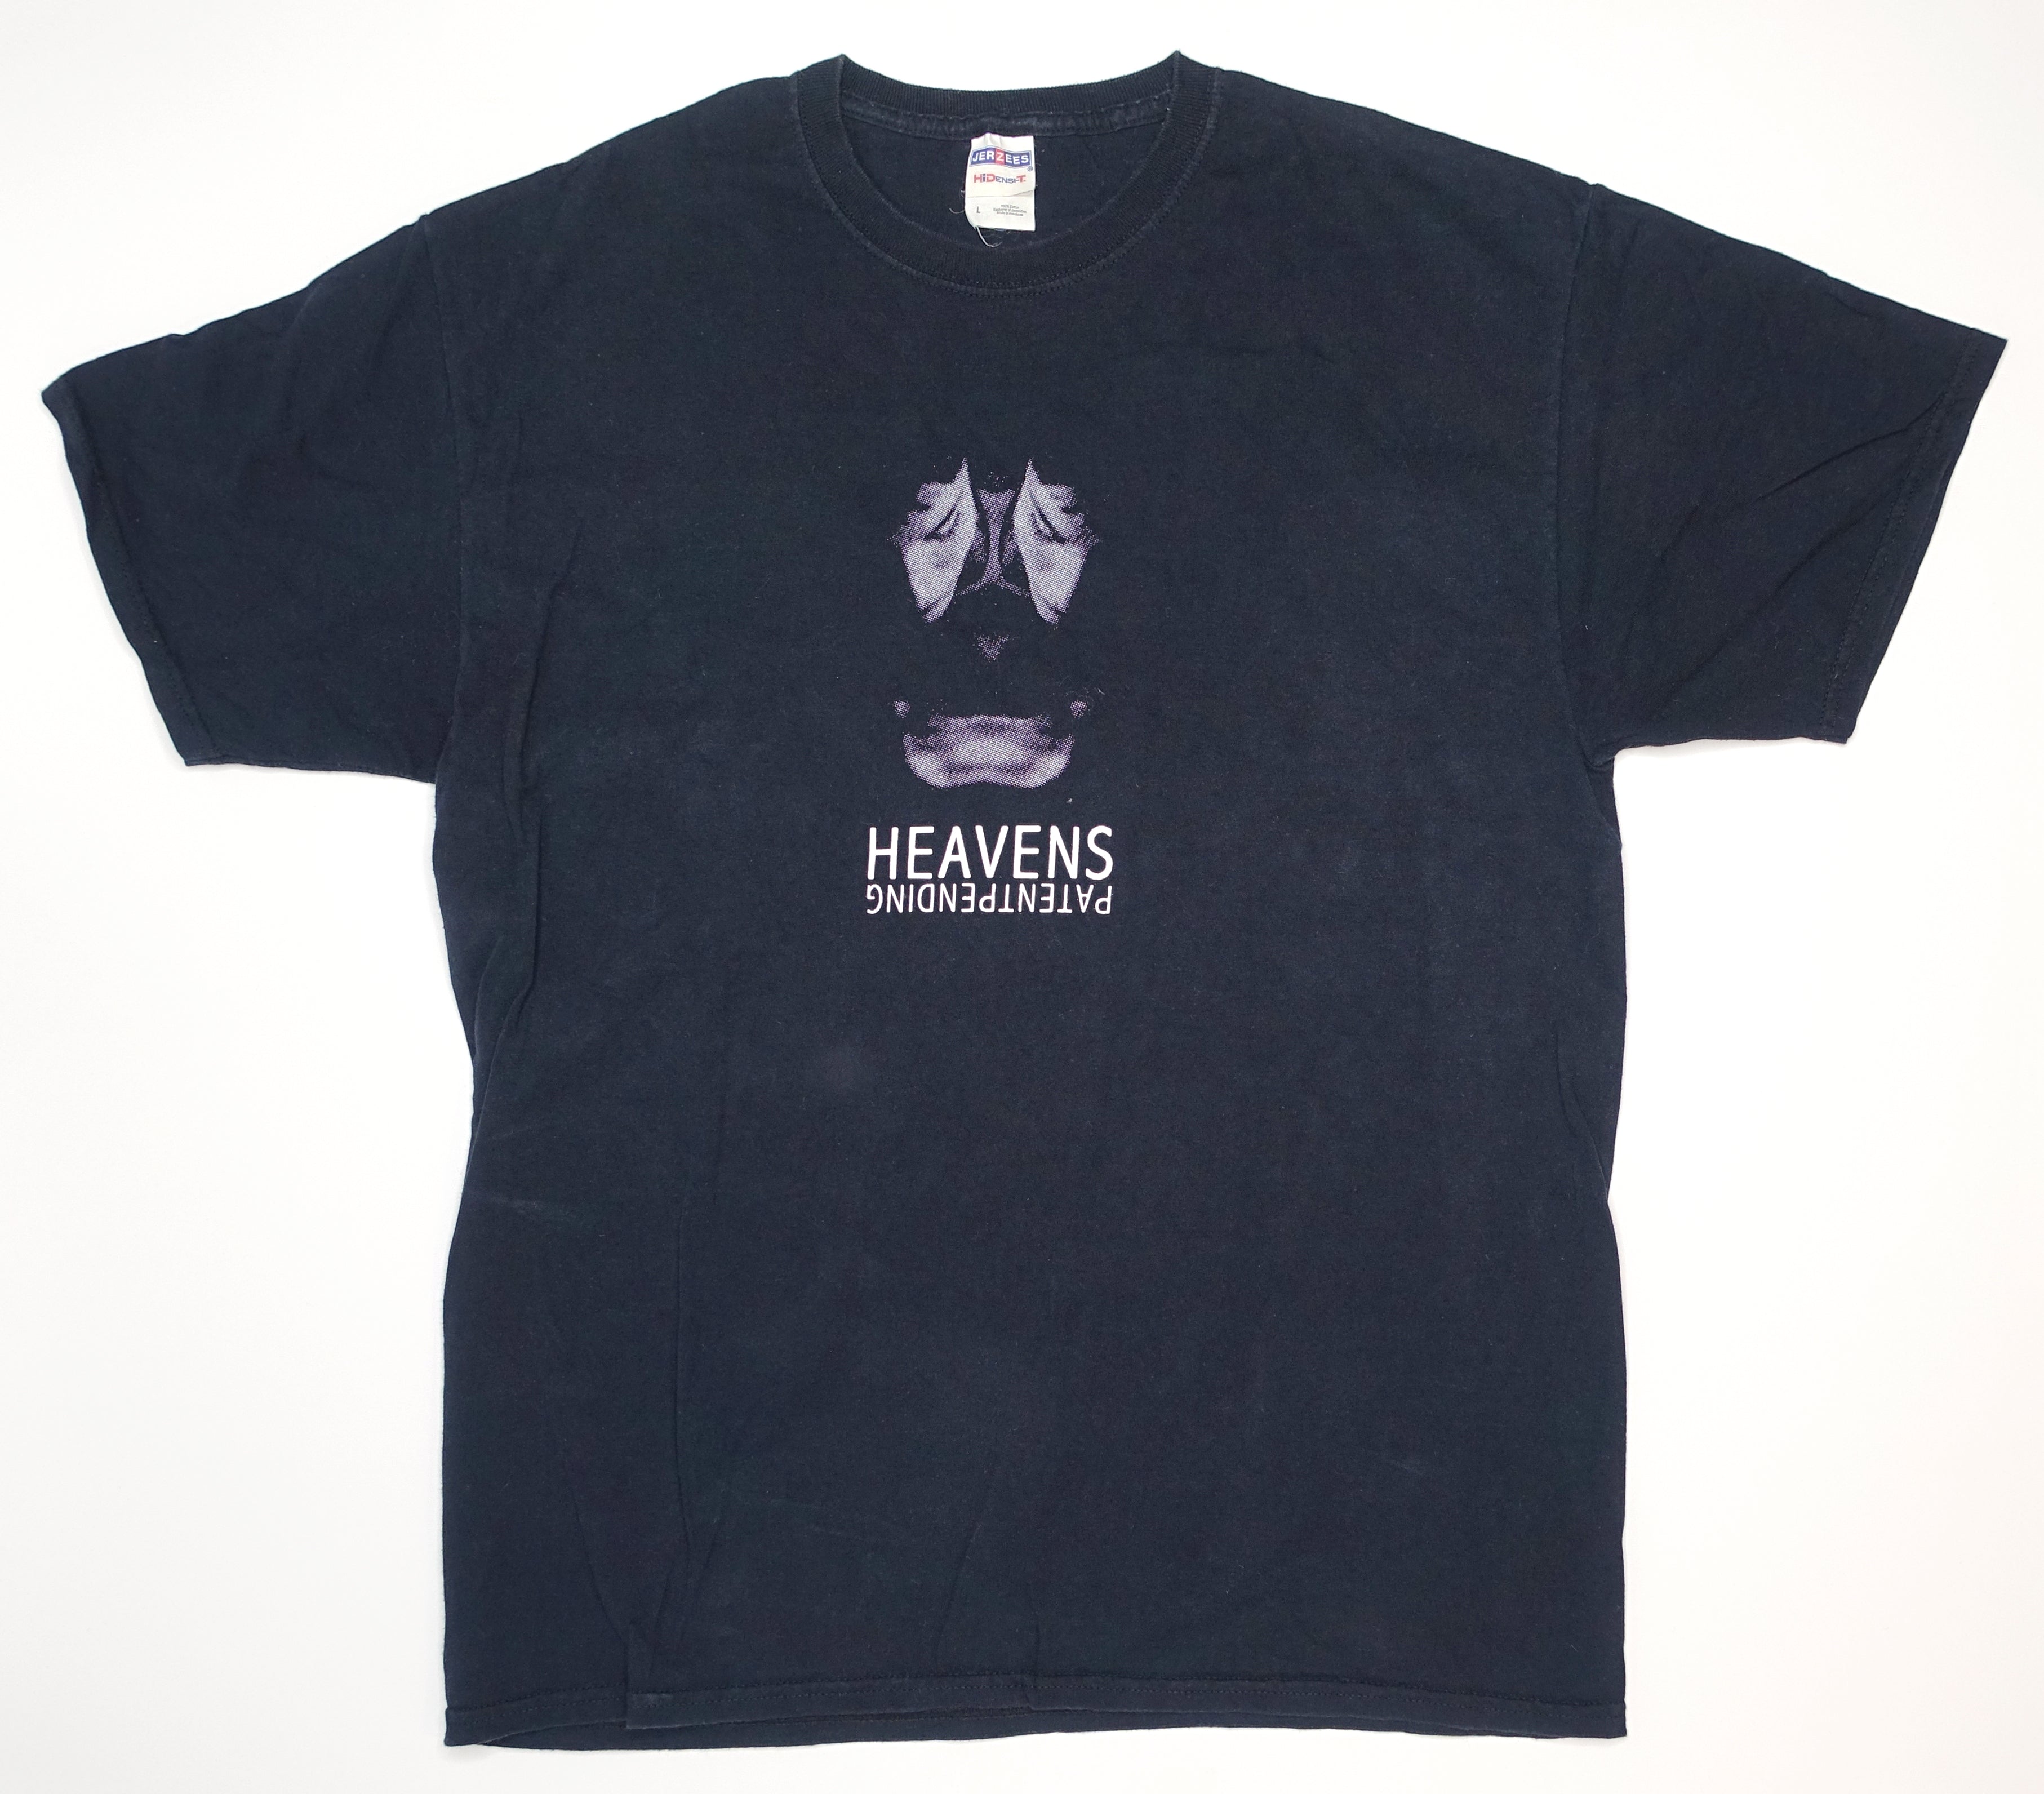 Heavens – Patent Pending 2006 Shirt Size Large